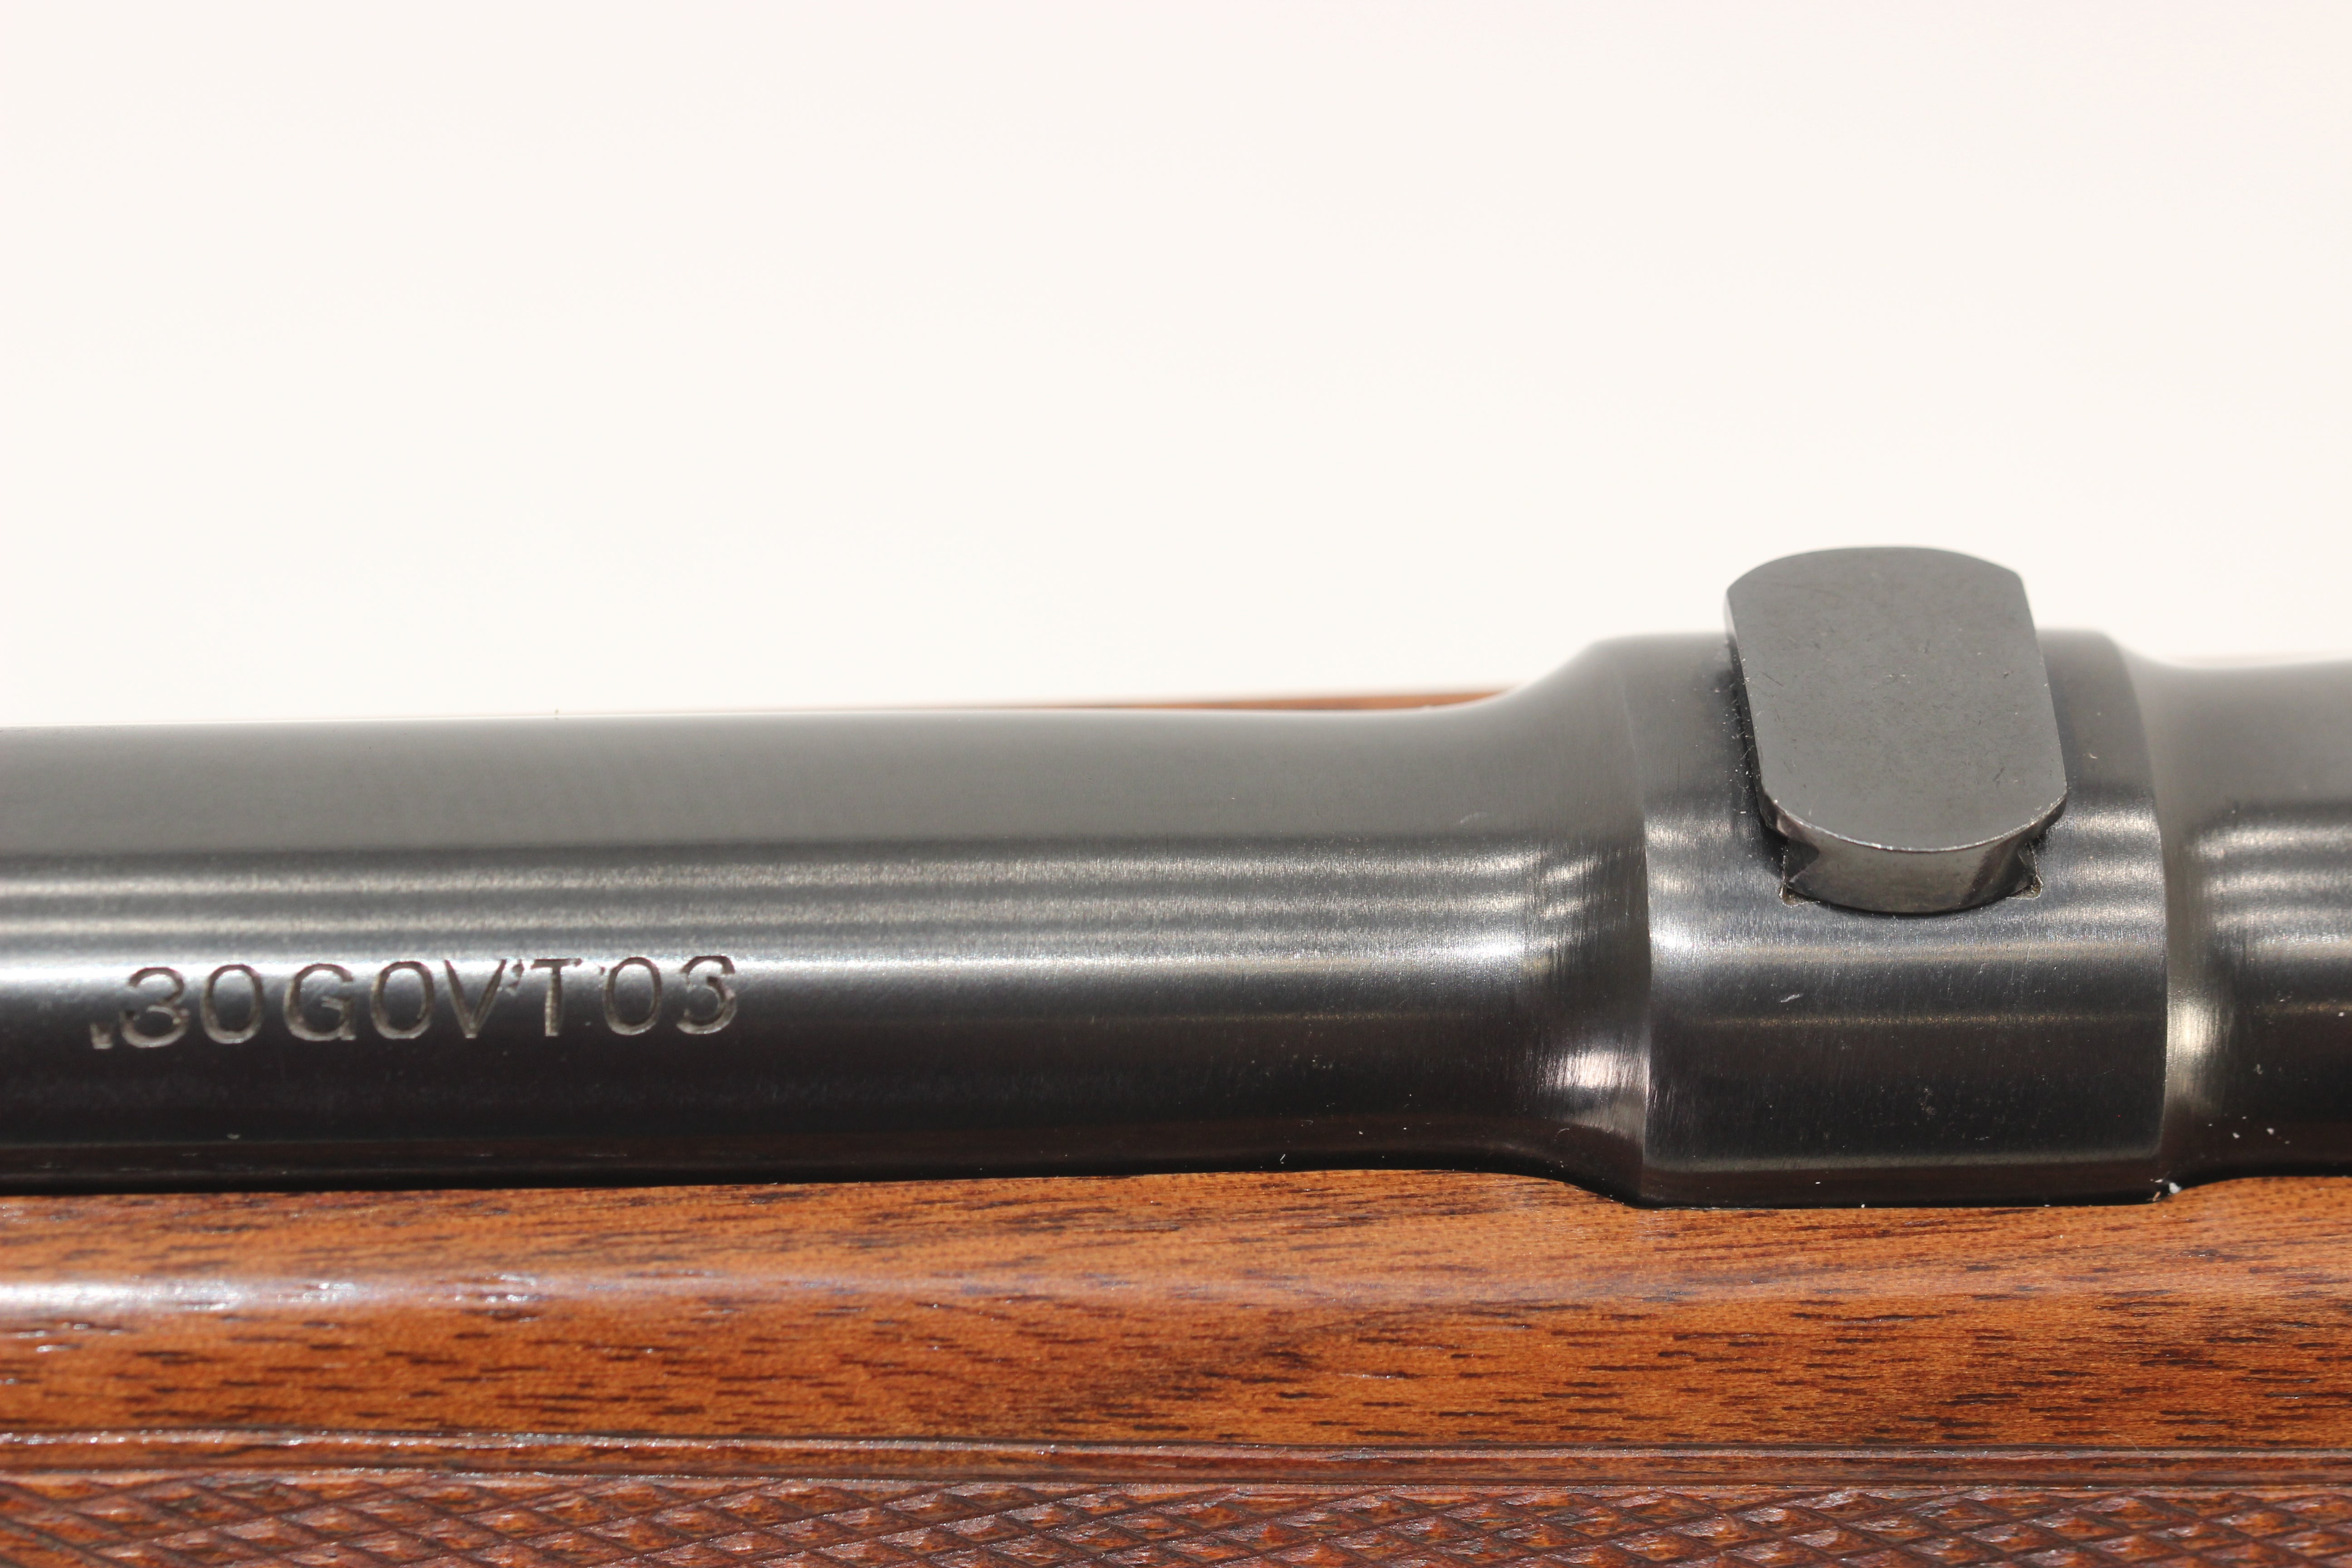 .30 Gov't '06 Super Grade Rifle - 1947